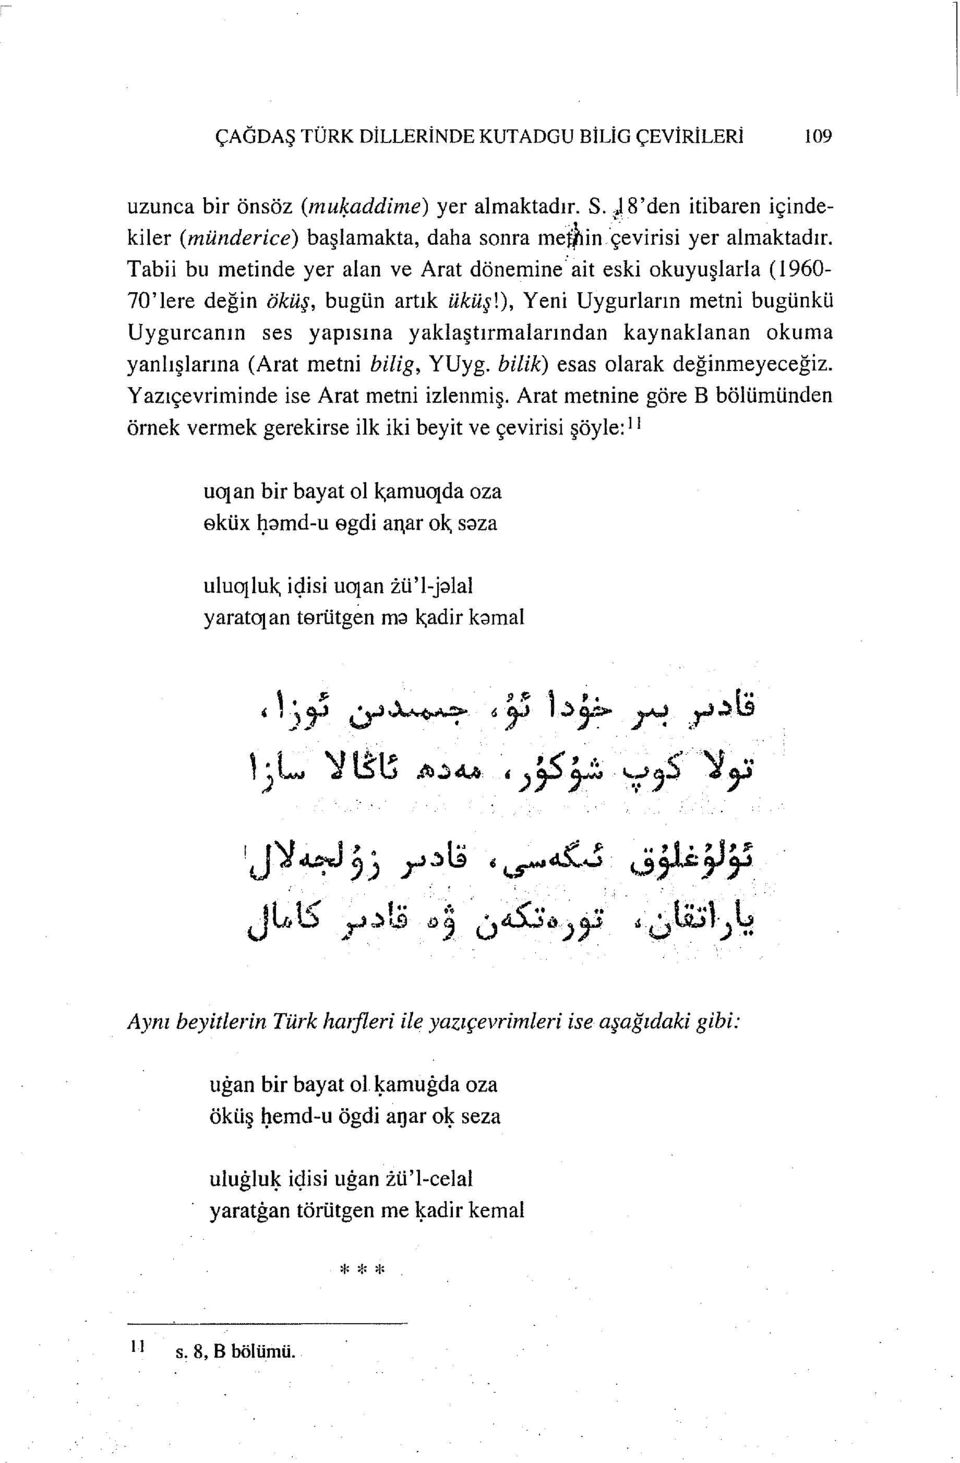 ), Yeni Uygurların metni bugünkü Uygurcanın ses yapısına yaklaştırmalarından kaynaklanan okuma yanlışlarına (Arat metni bilig, YUyg. bilik) esas olarak değinmeyeceğiz.